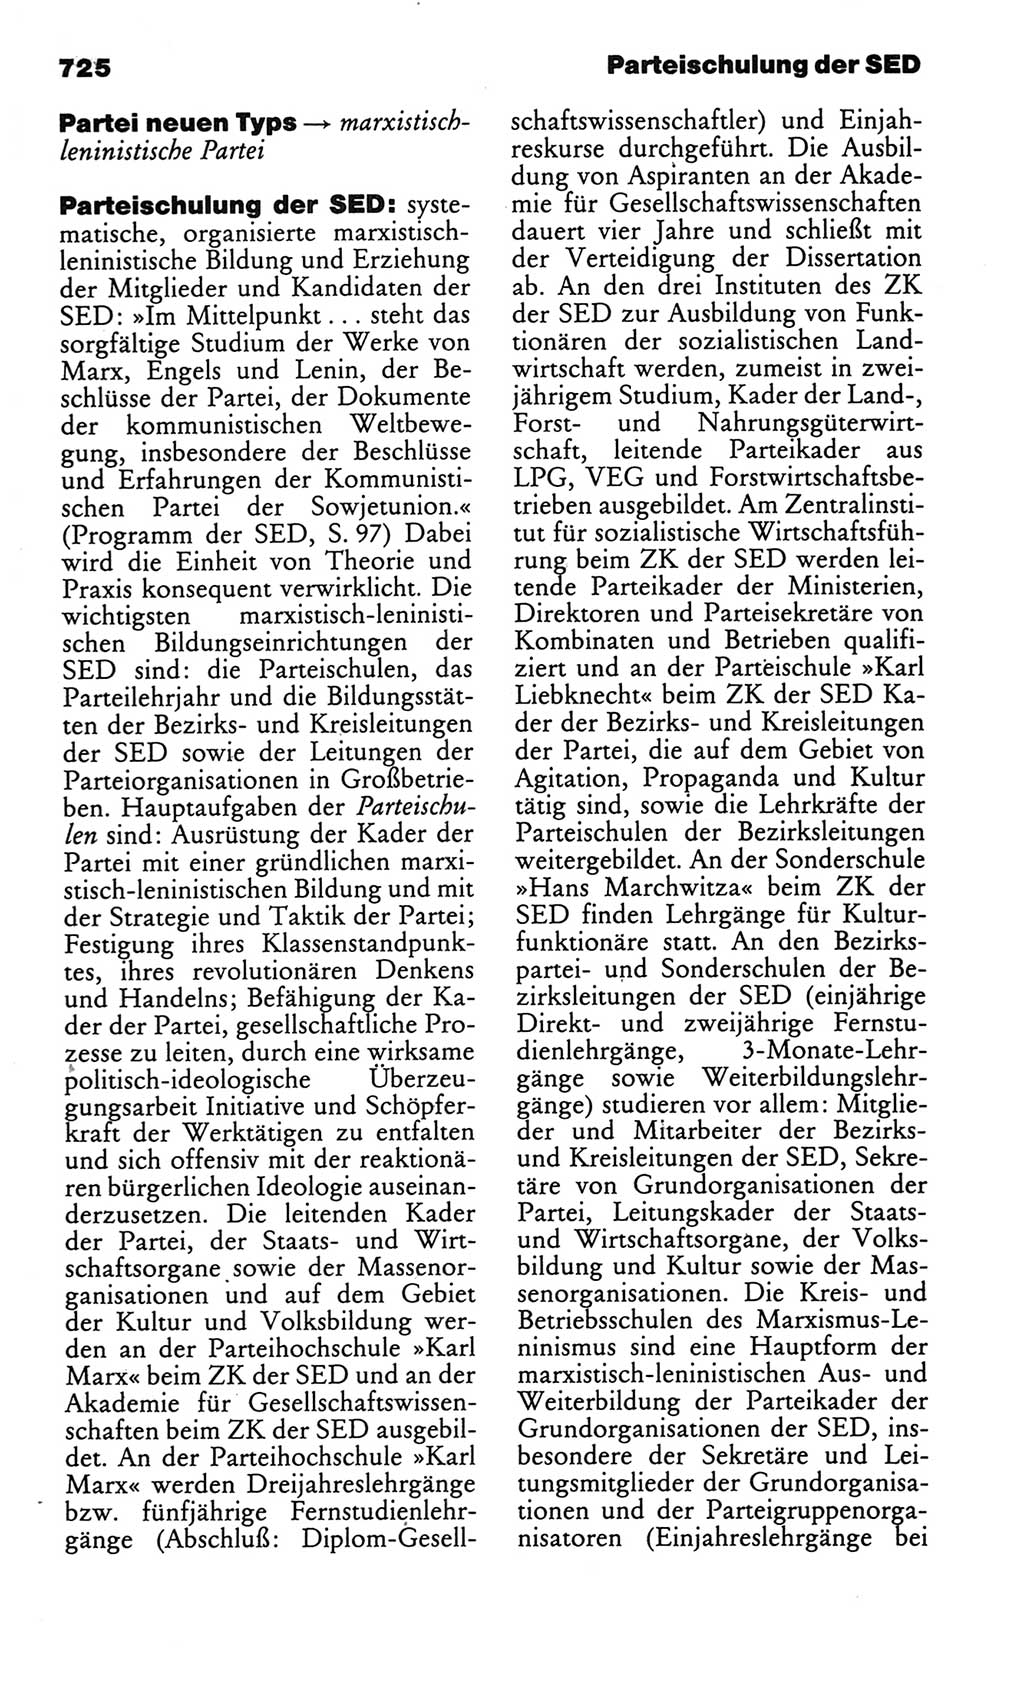 Kleines politisches Wörterbuch [Deutsche Demokratische Republik (DDR)] 1986, Seite 725 (Kl. pol. Wb. DDR 1986, S. 725)